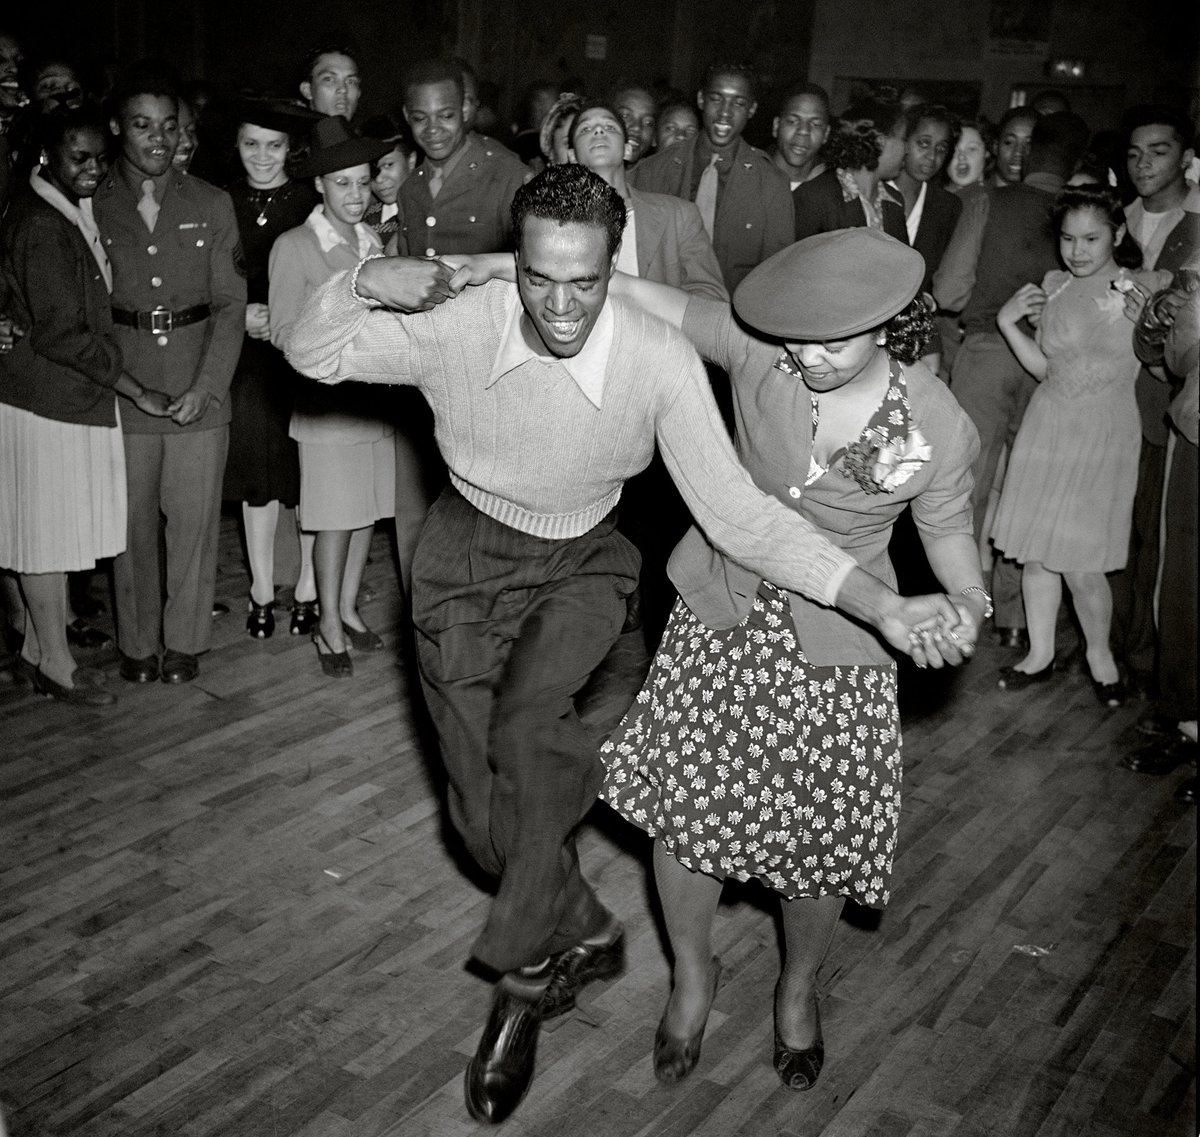 @errikorn Afroamericani che ballano, bevono e servono nell'esercito negli anni '40. Quindi, l'apartheid non esisteva, buffone? 😍😍
Fai pena.